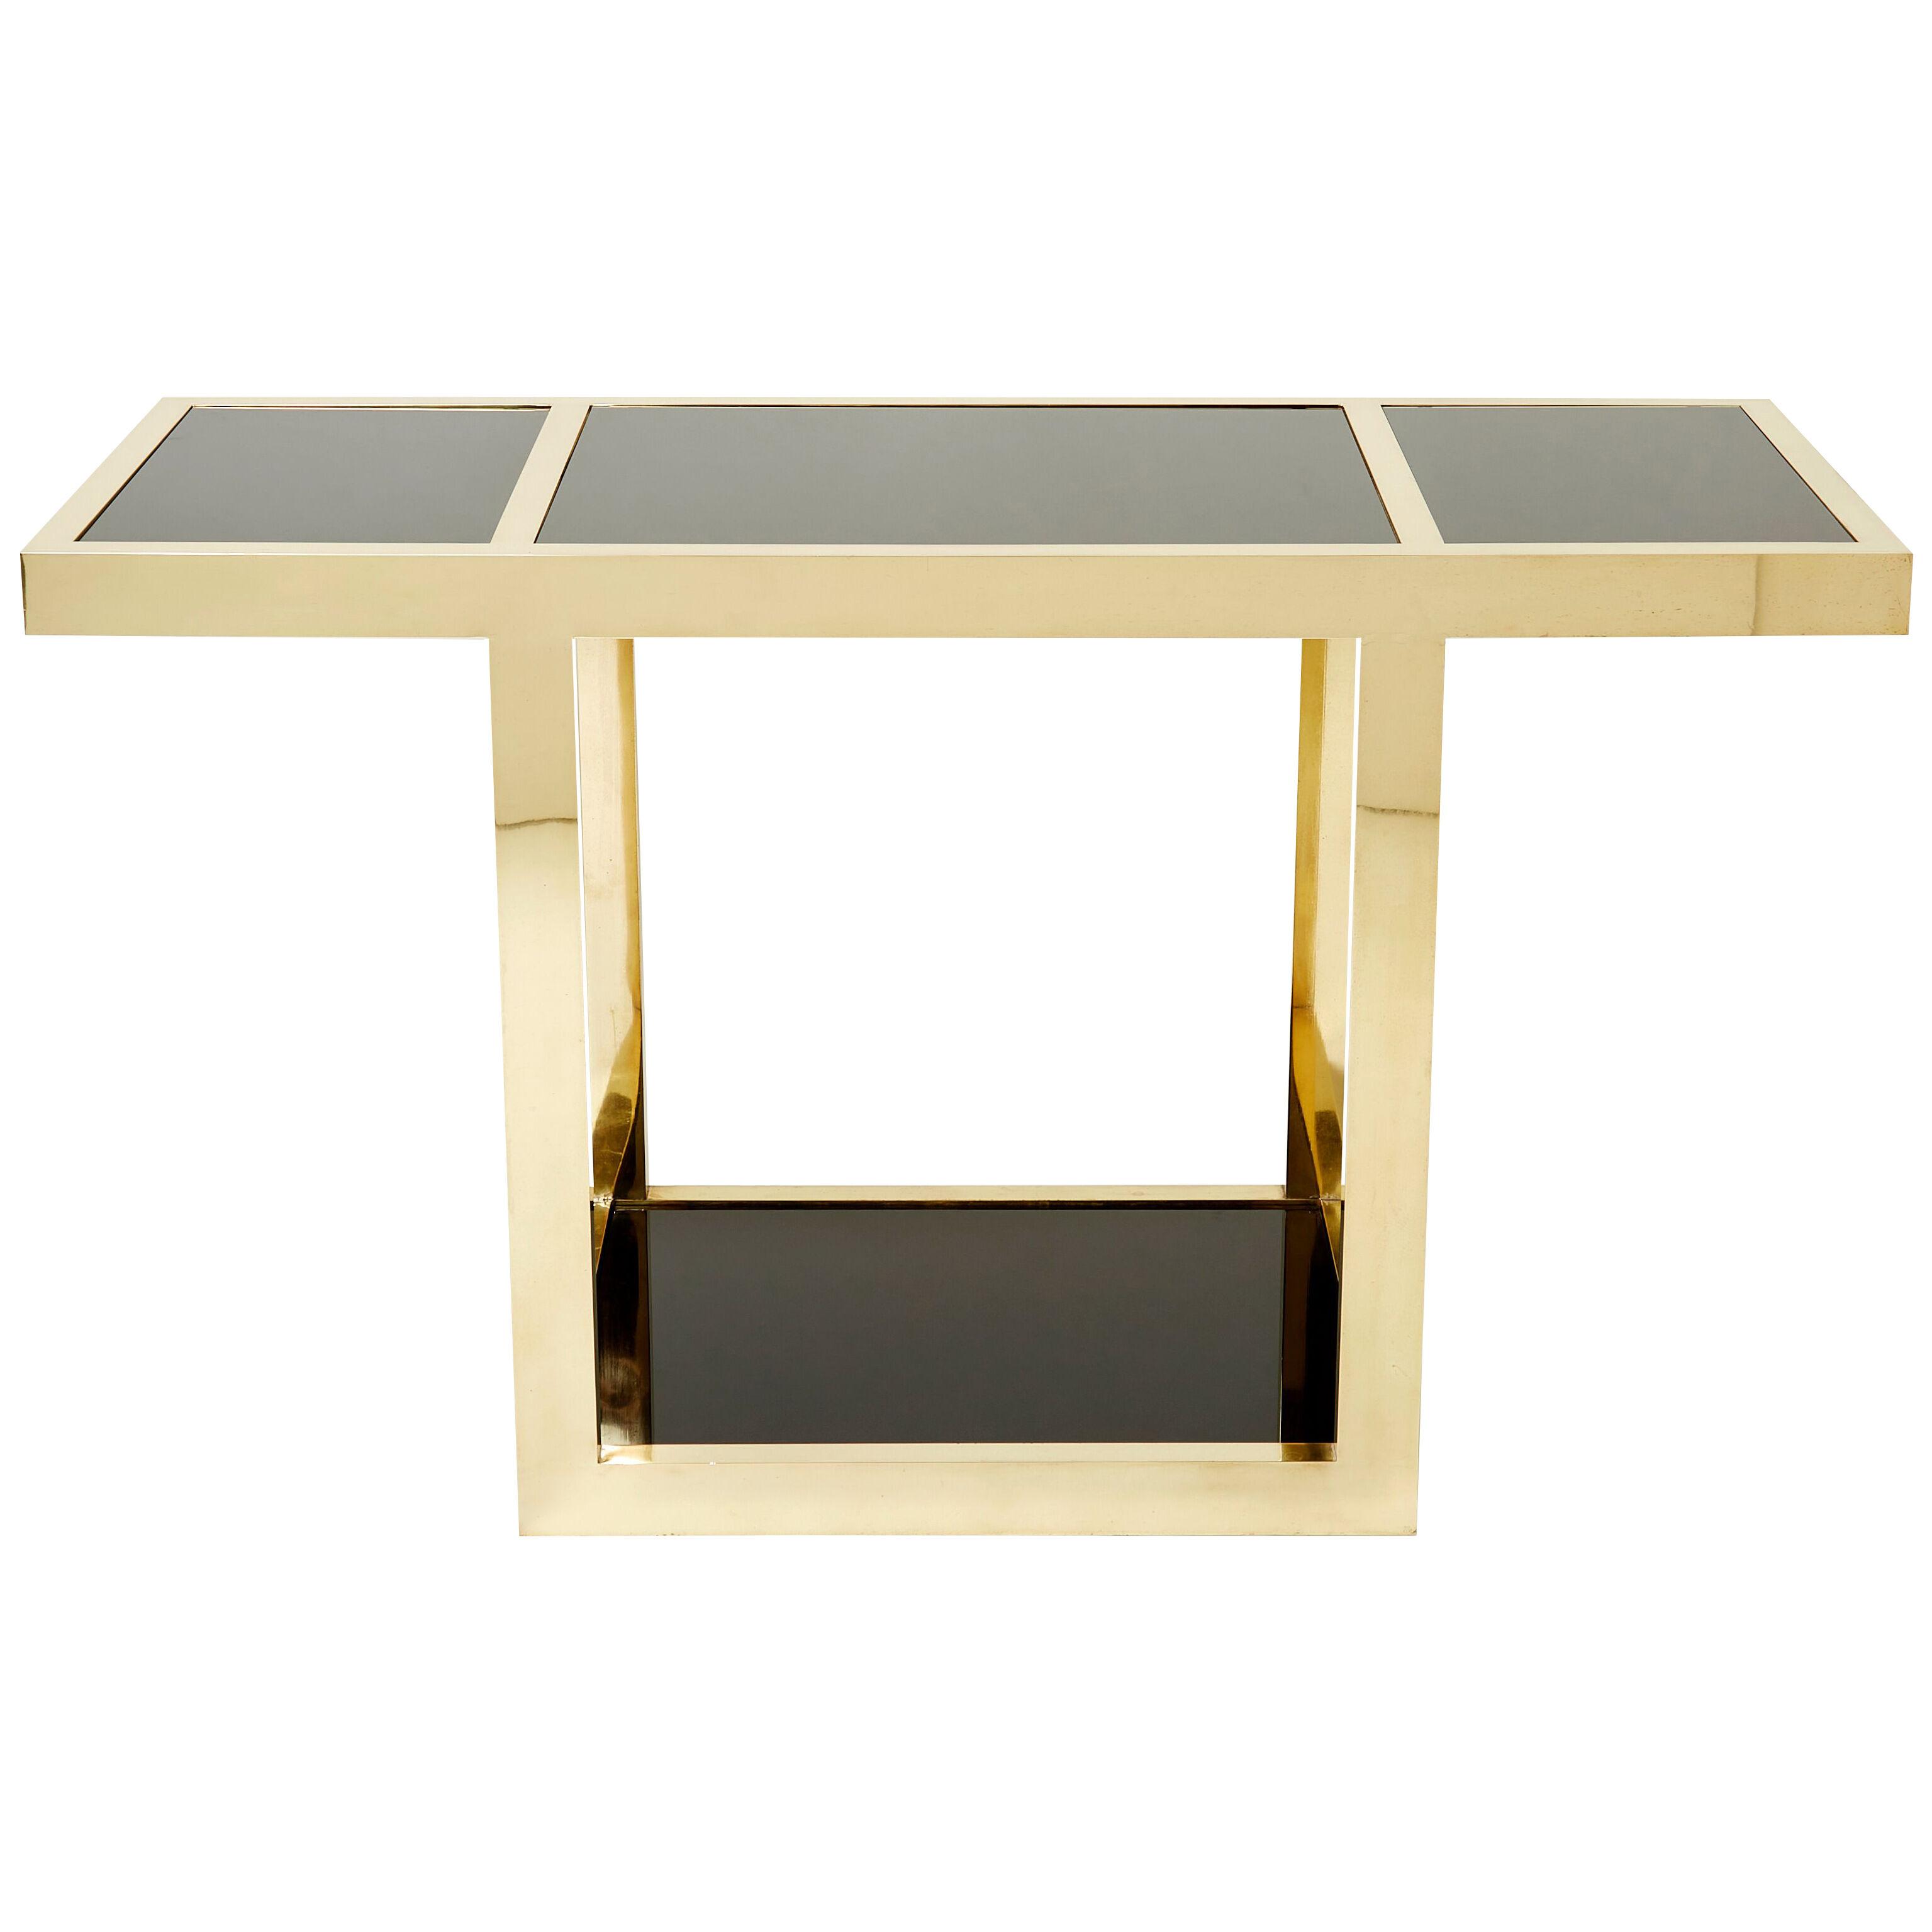 Gabriella Crespi “Puzzle” brass black opaline console table 1973